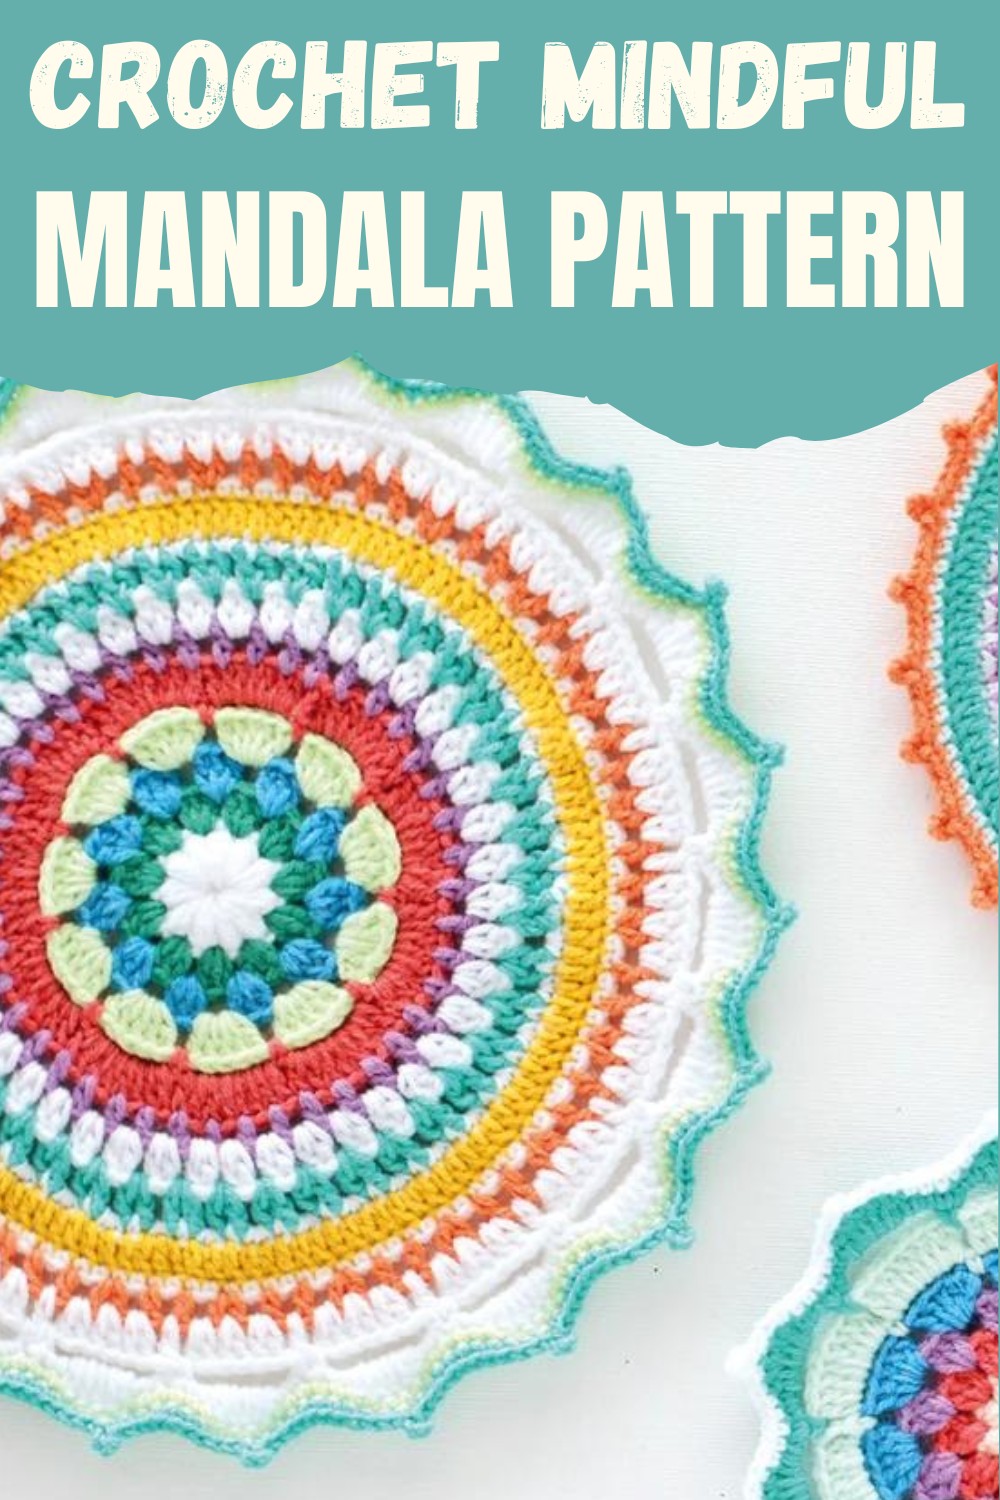 Crochet Mindful Mandala Pattern